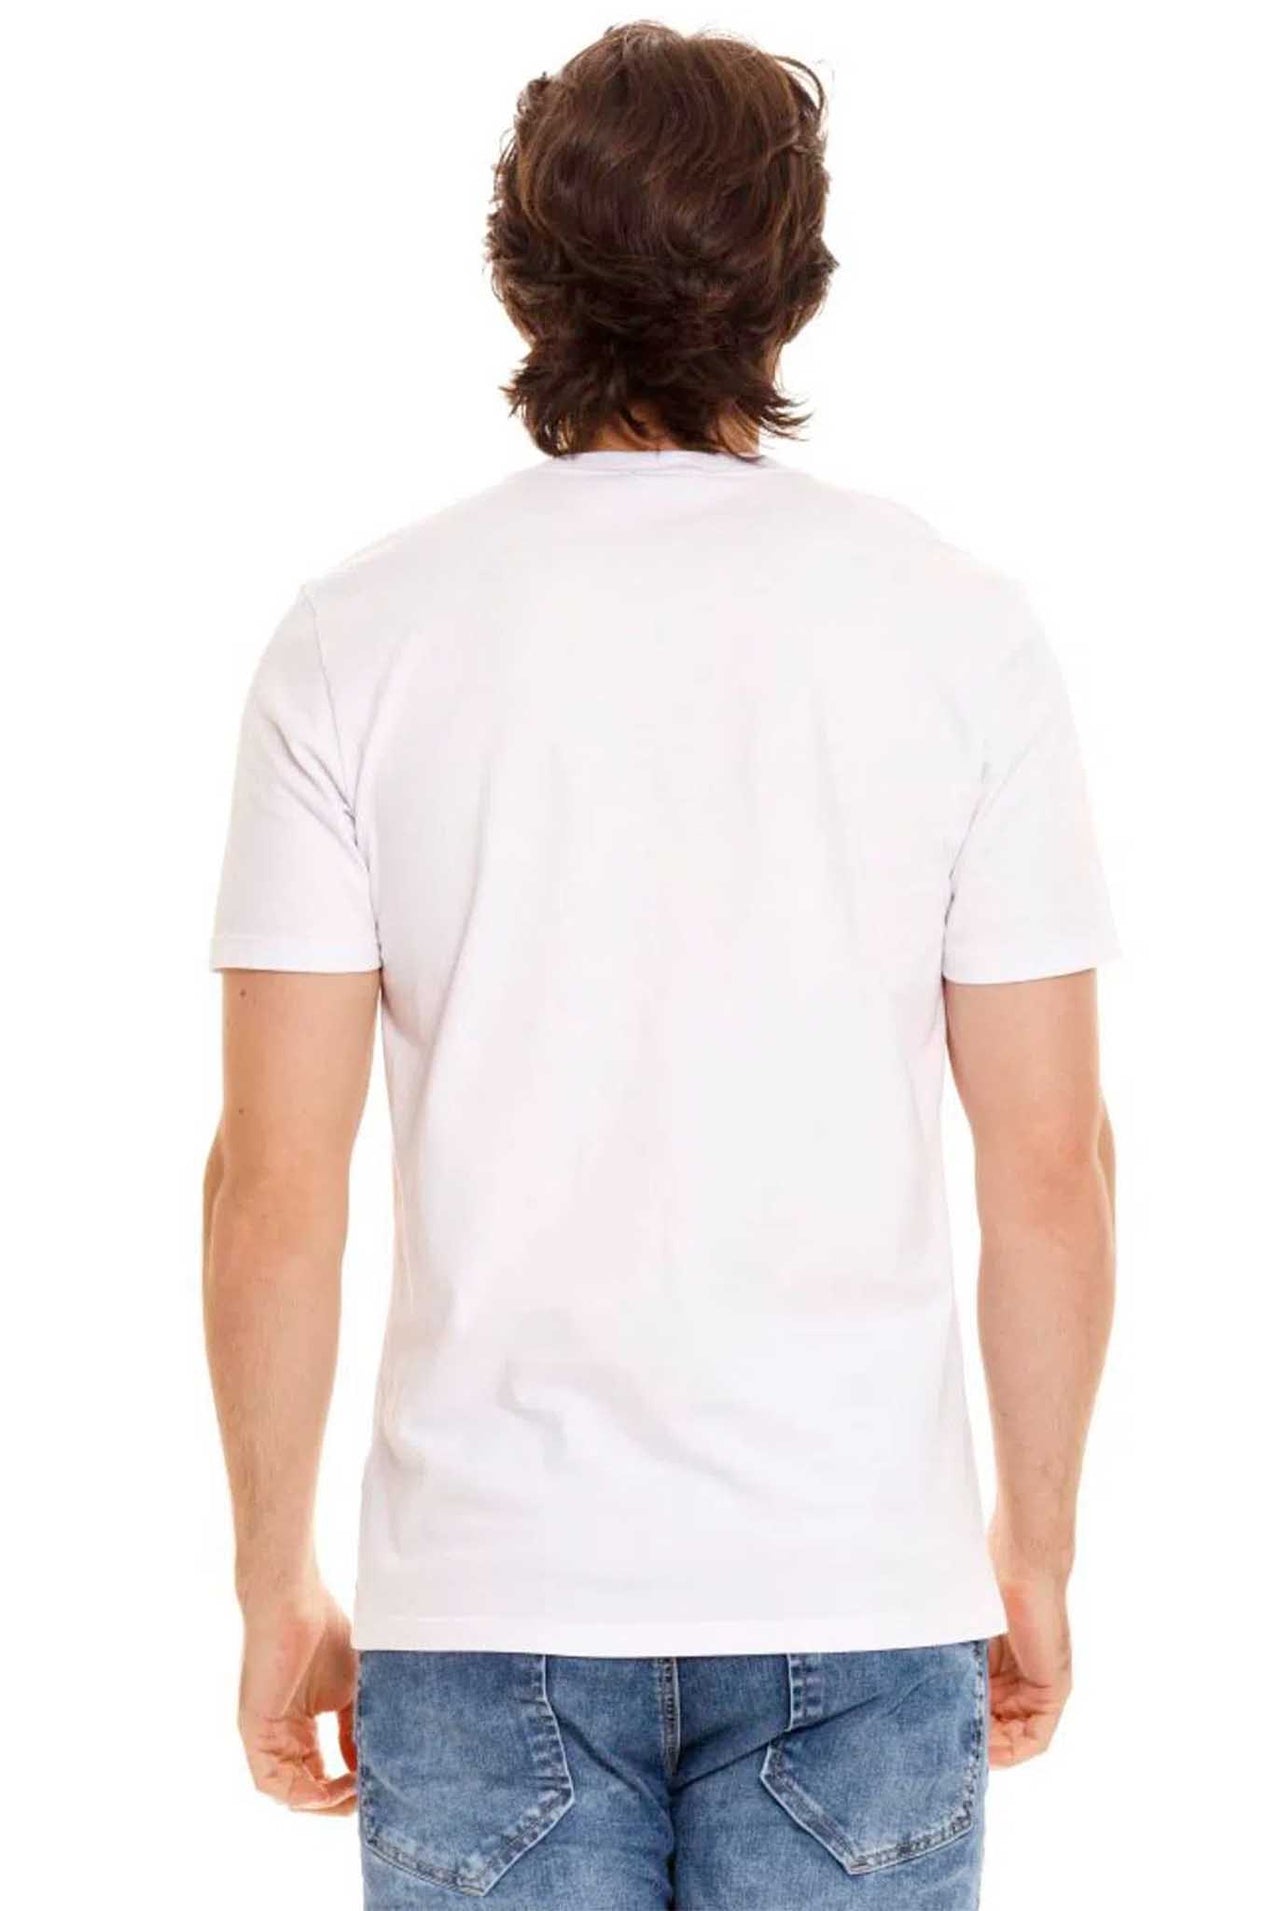 Camiseta Girbaud 2425 Blanco